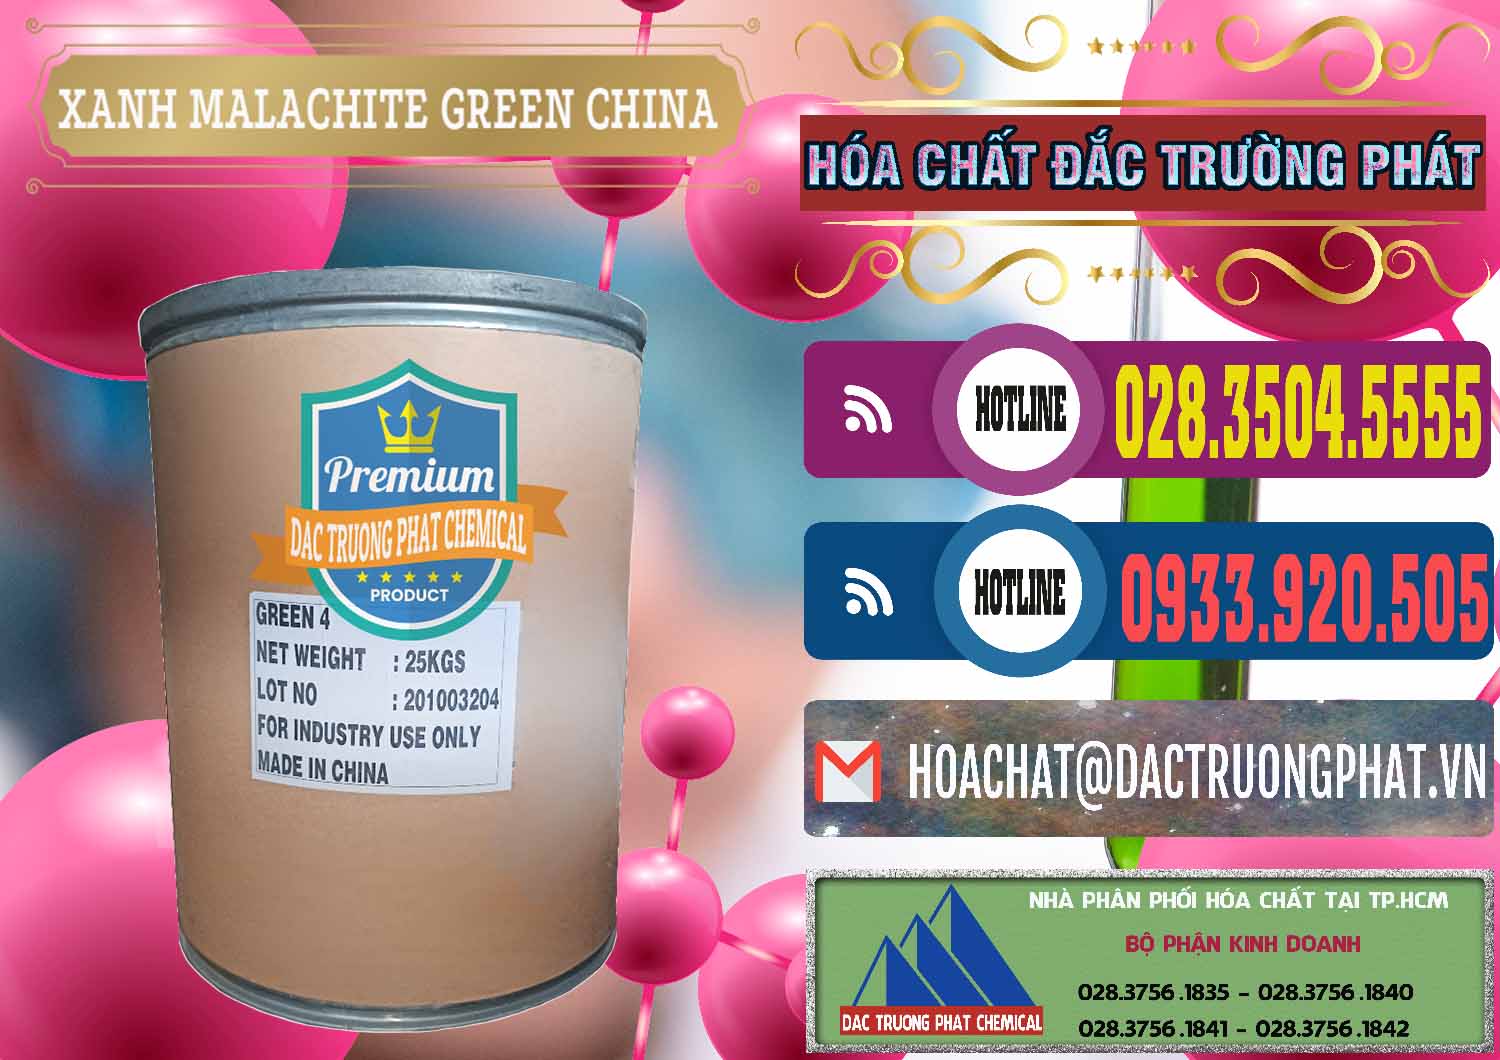 Nơi phân phối ( bán ) Xanh Malachite Green Trung Quốc China - 0325 - Cty chuyên cung cấp & bán hóa chất tại TP.HCM - muabanhoachat.com.vn